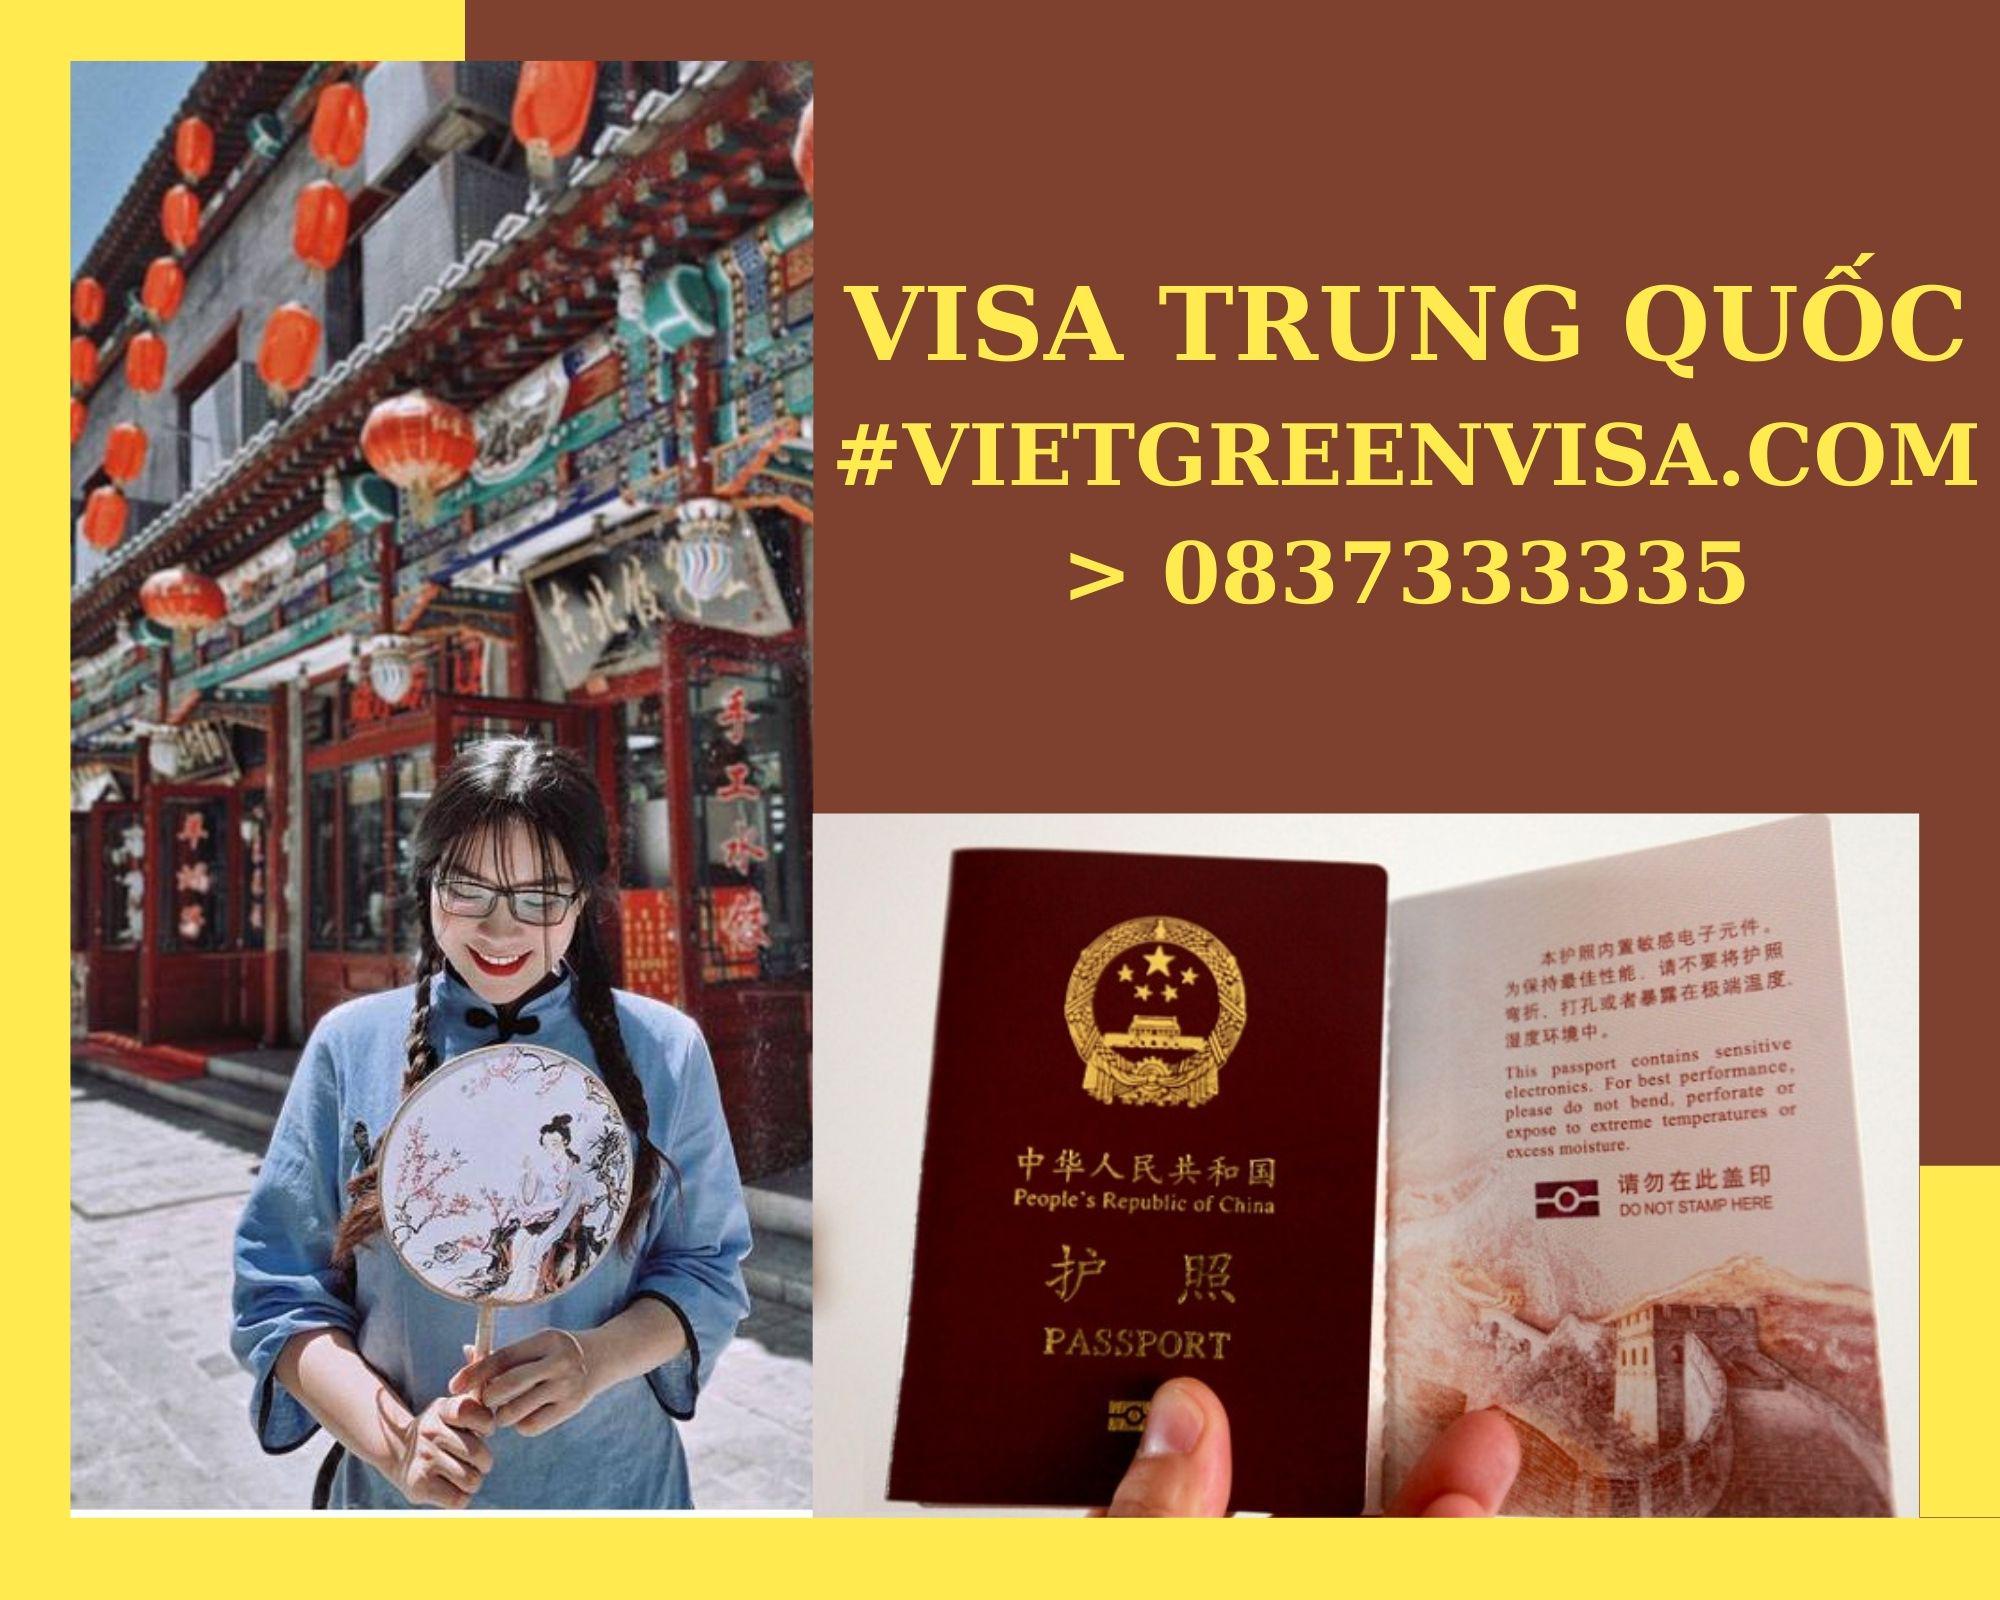 Dịch vụ visa Trung Quốc đi du lịch uy tín và trọn gói